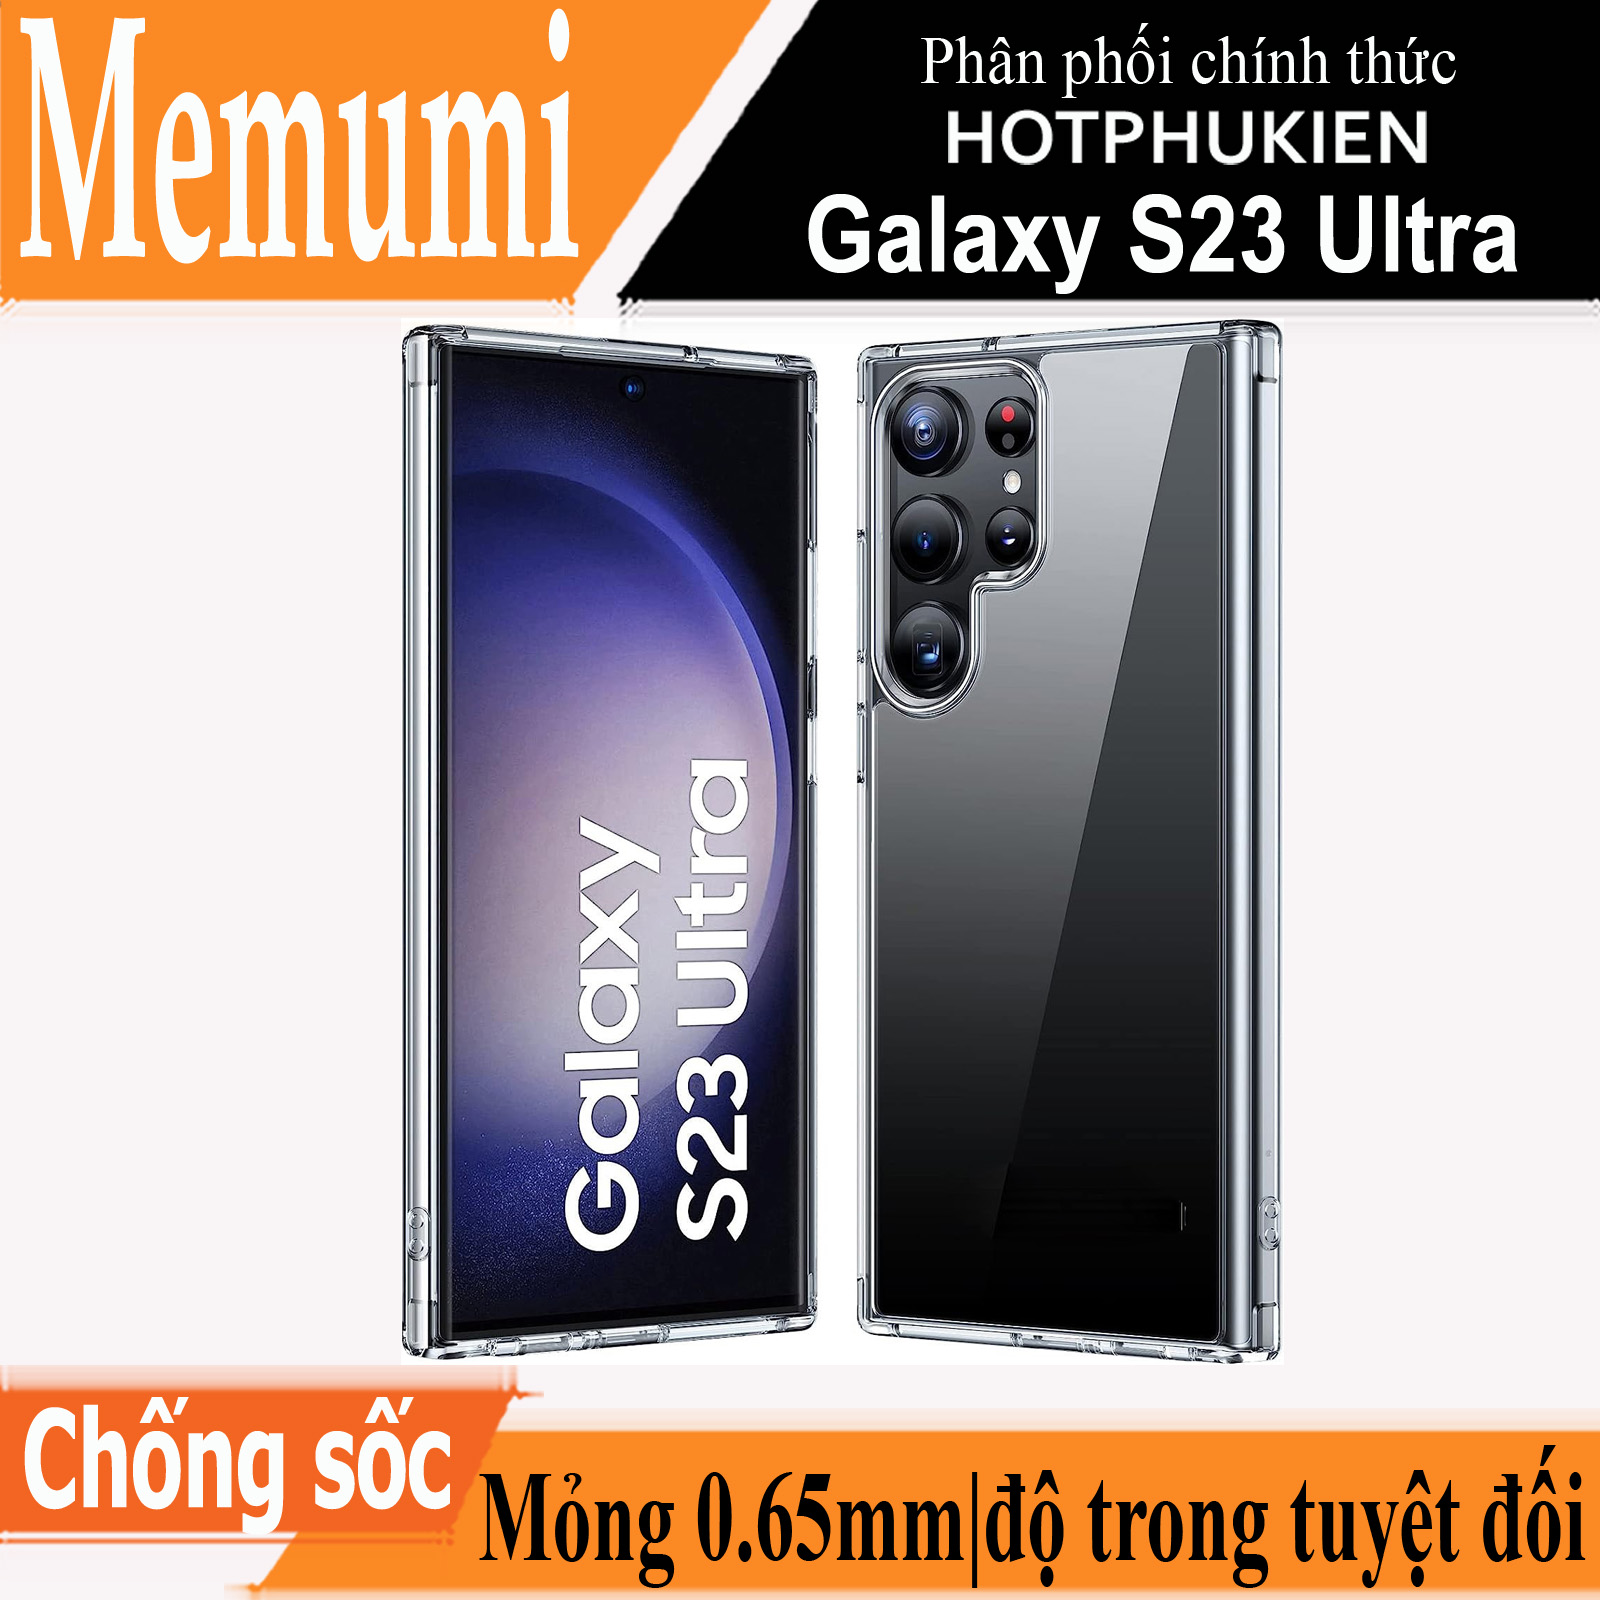 Ốp lưng siêu mỏng 0.65mm cho Samsung Galaxy S23 Ultra hiệu Memumi Crystal Clear Case thiết kế trong suốt với độ trong tuyệt đối, không bị ố vàng theo thời gian, hỗ trợ tản nhiệt siêu tốt